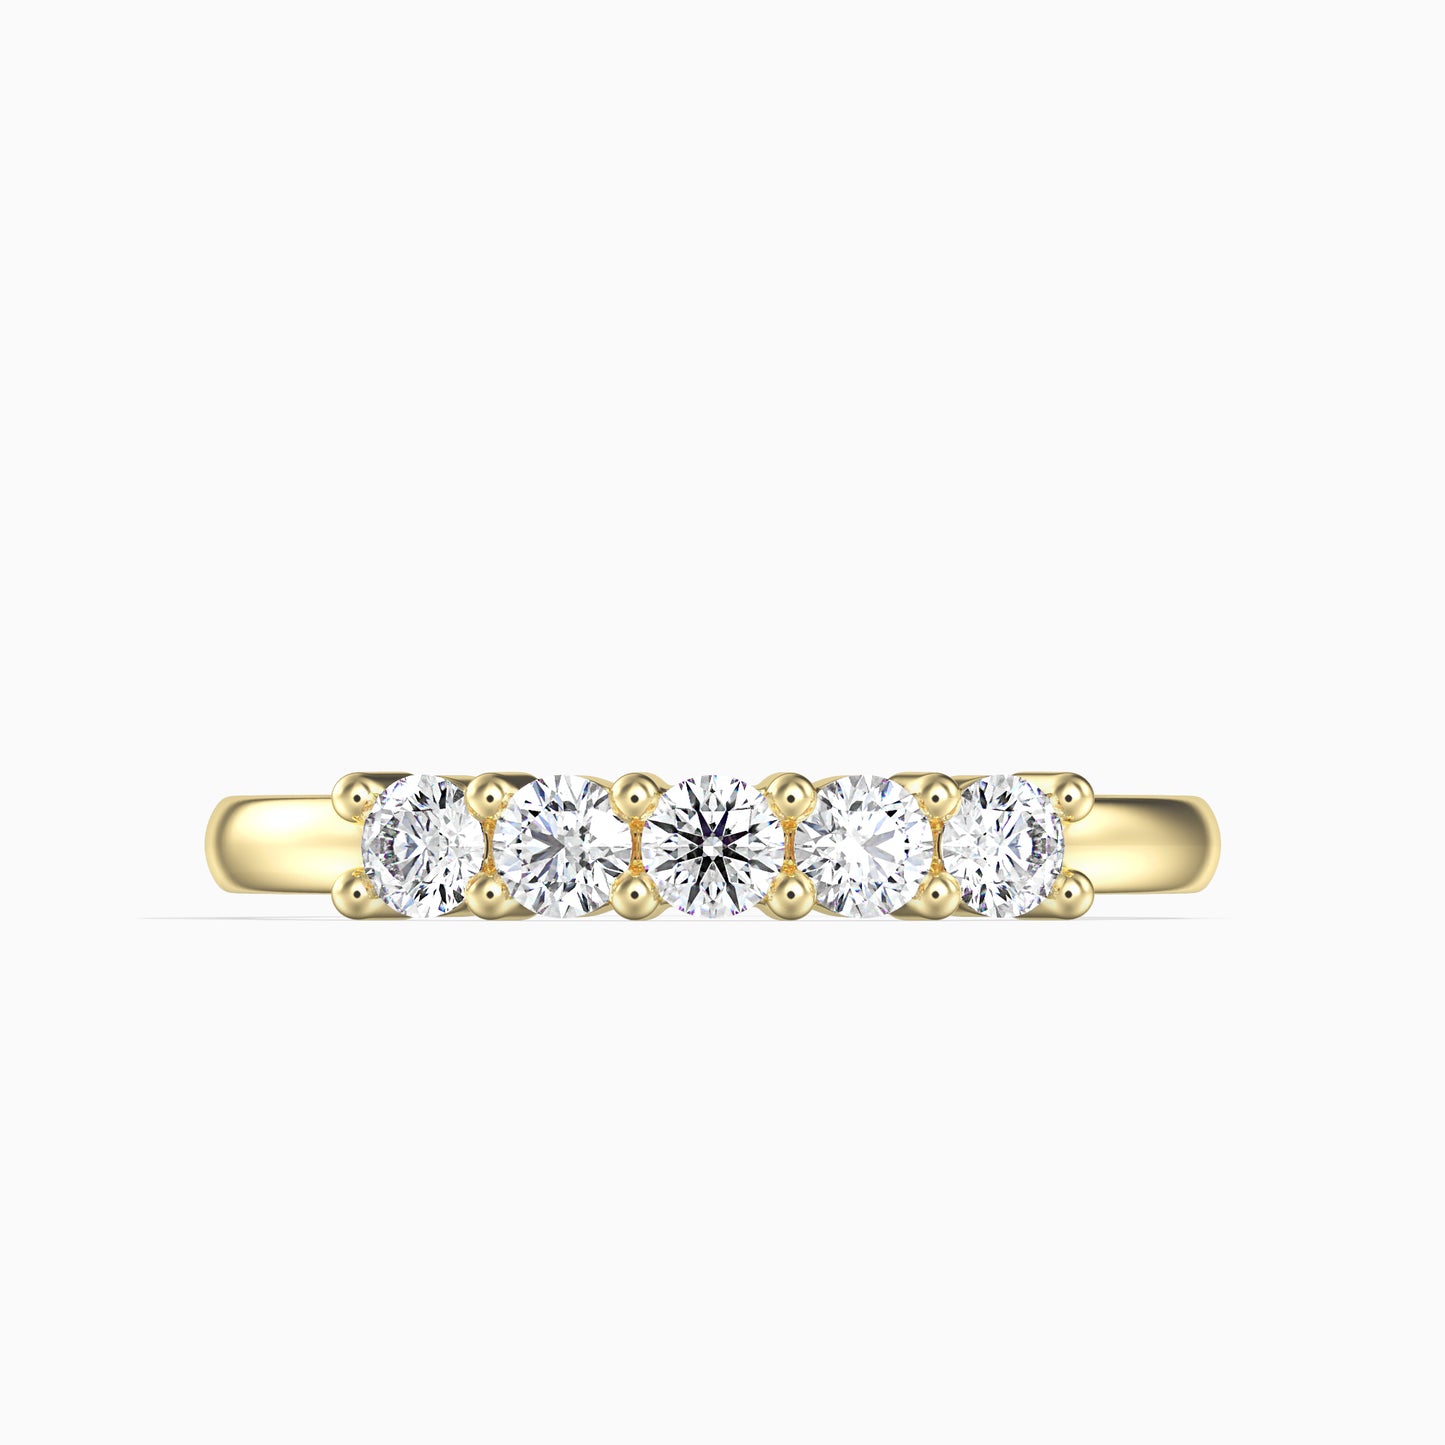 14K Arany Gyűrű 5 darab Fehér Gyémánttal